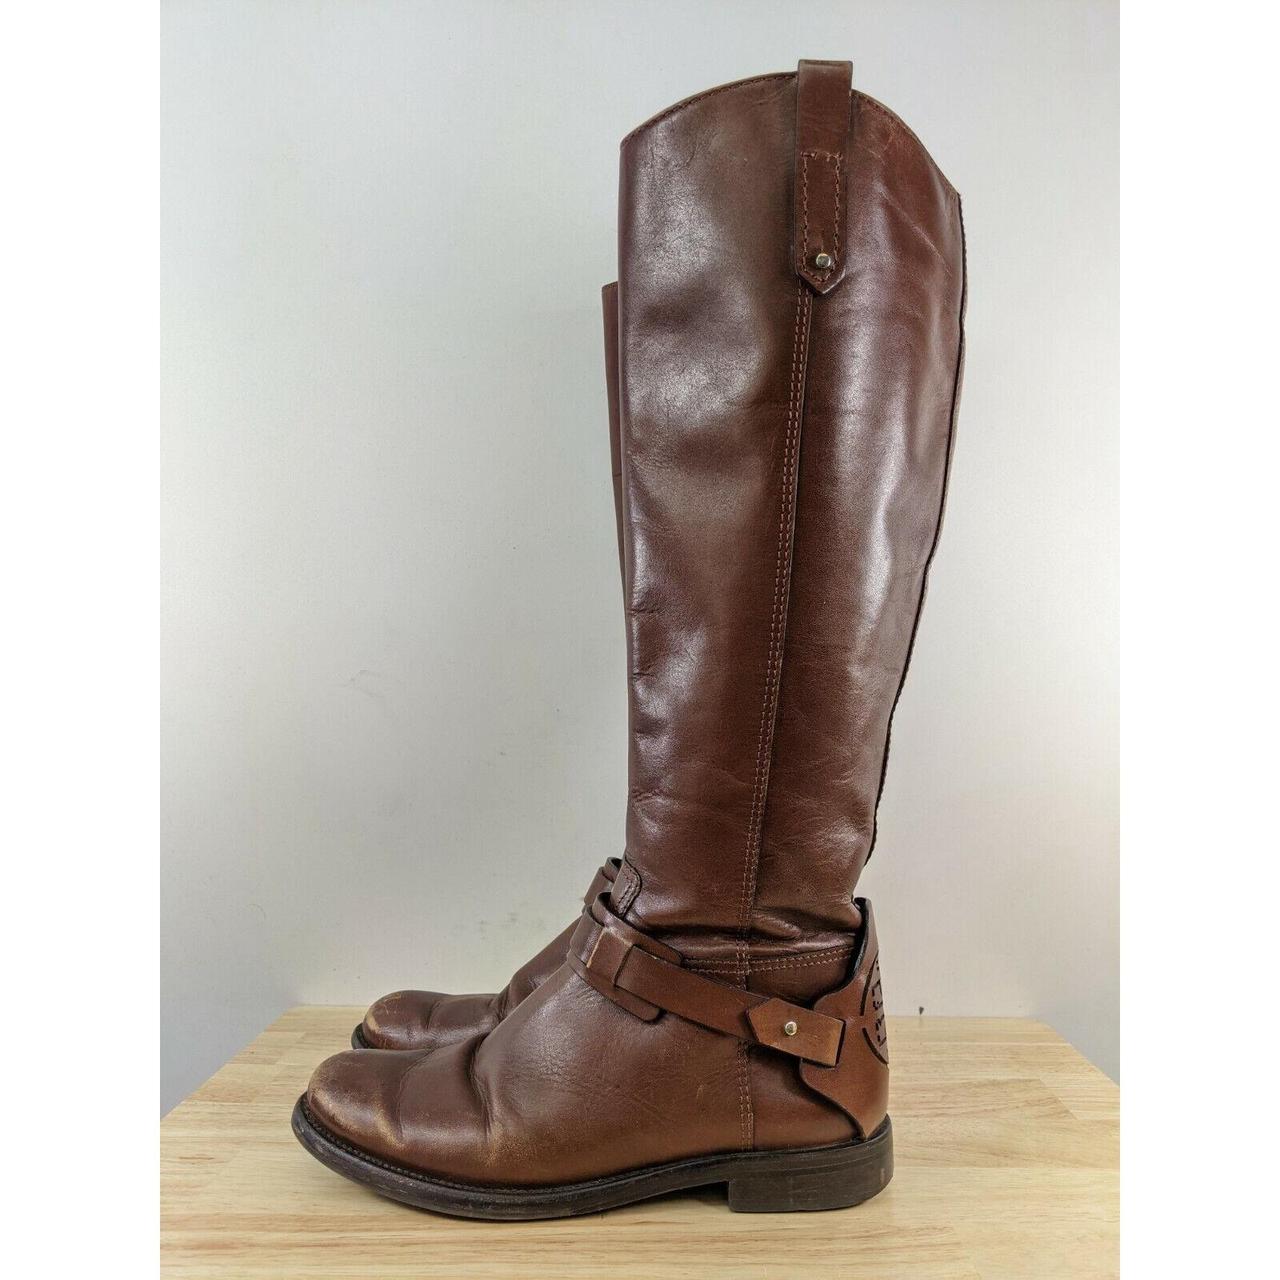 Tory Burch Women's Brown Boots | Depop